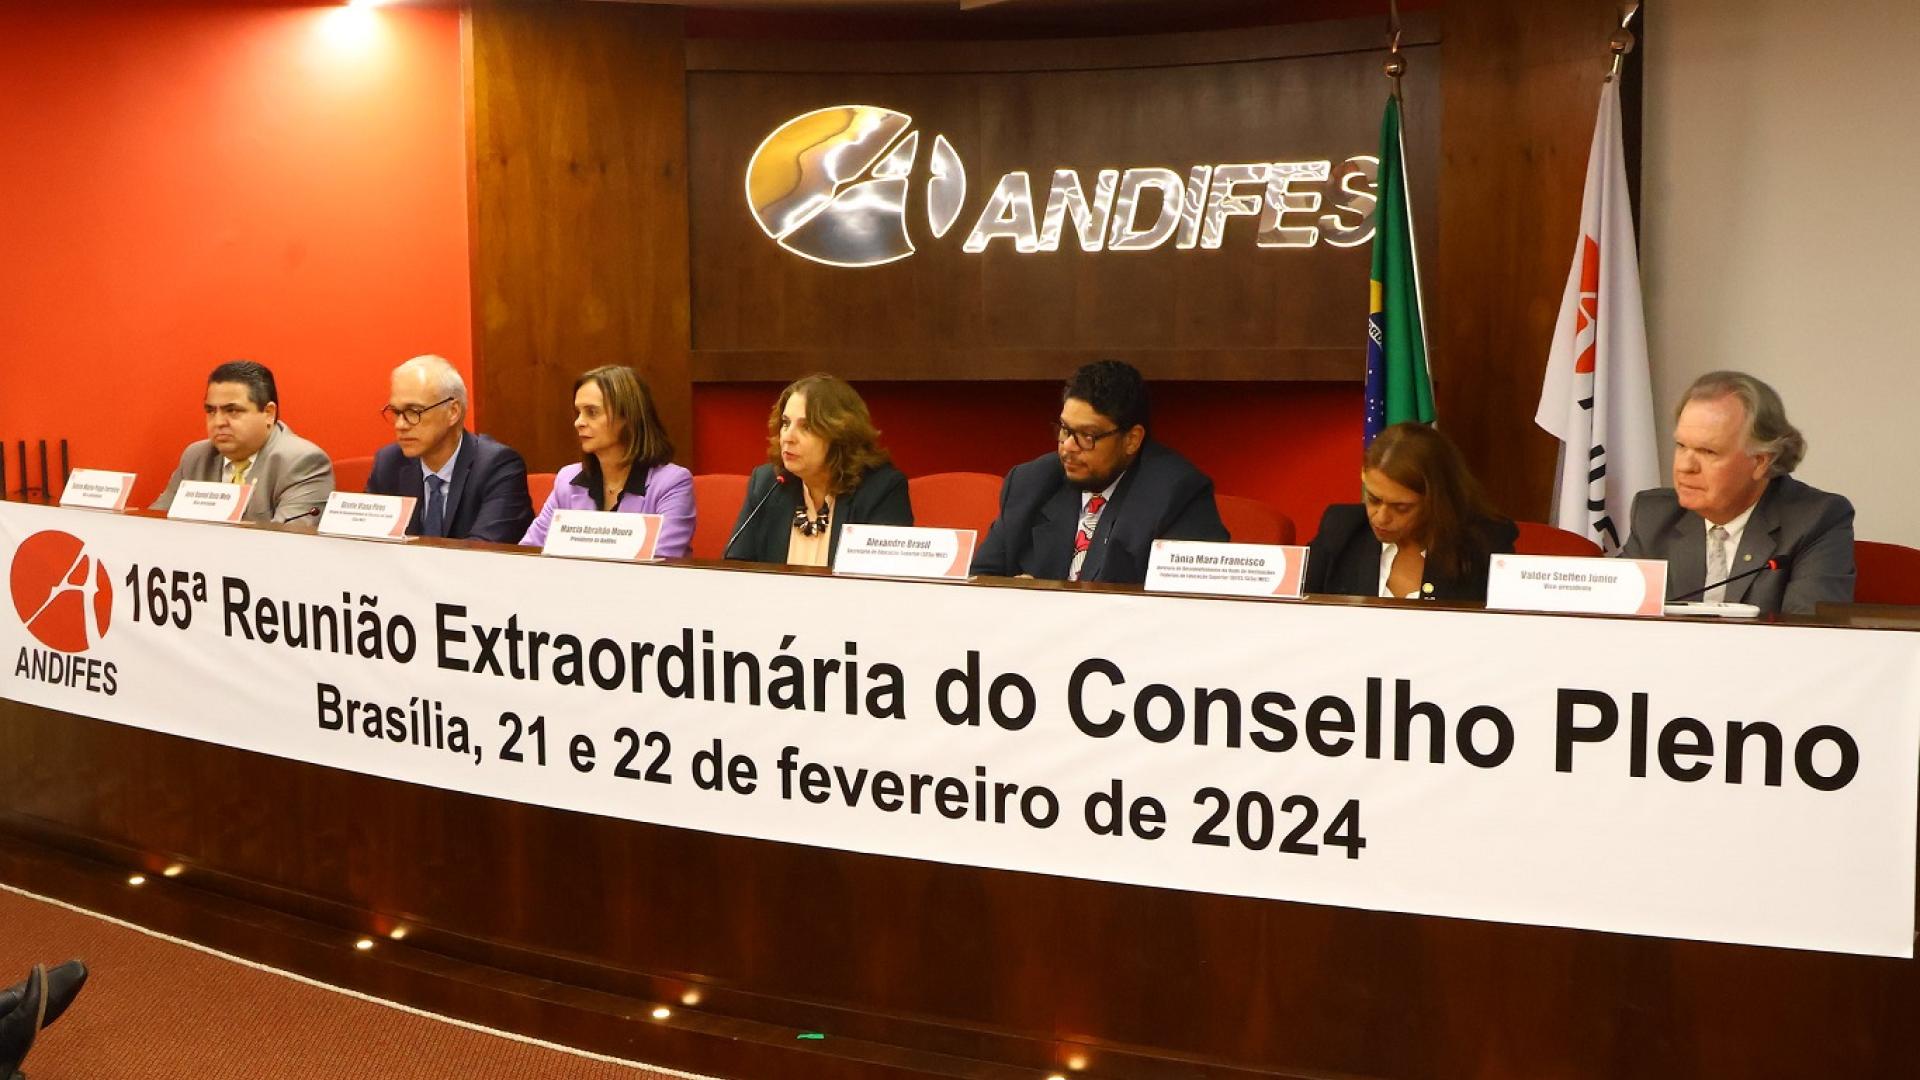 Foto da mesa diretiva da reunião, com sete pessoas sentadas; reitor da UFU e um dos vice-presidentes da Andifes, Valder Steffen é o mais à direita